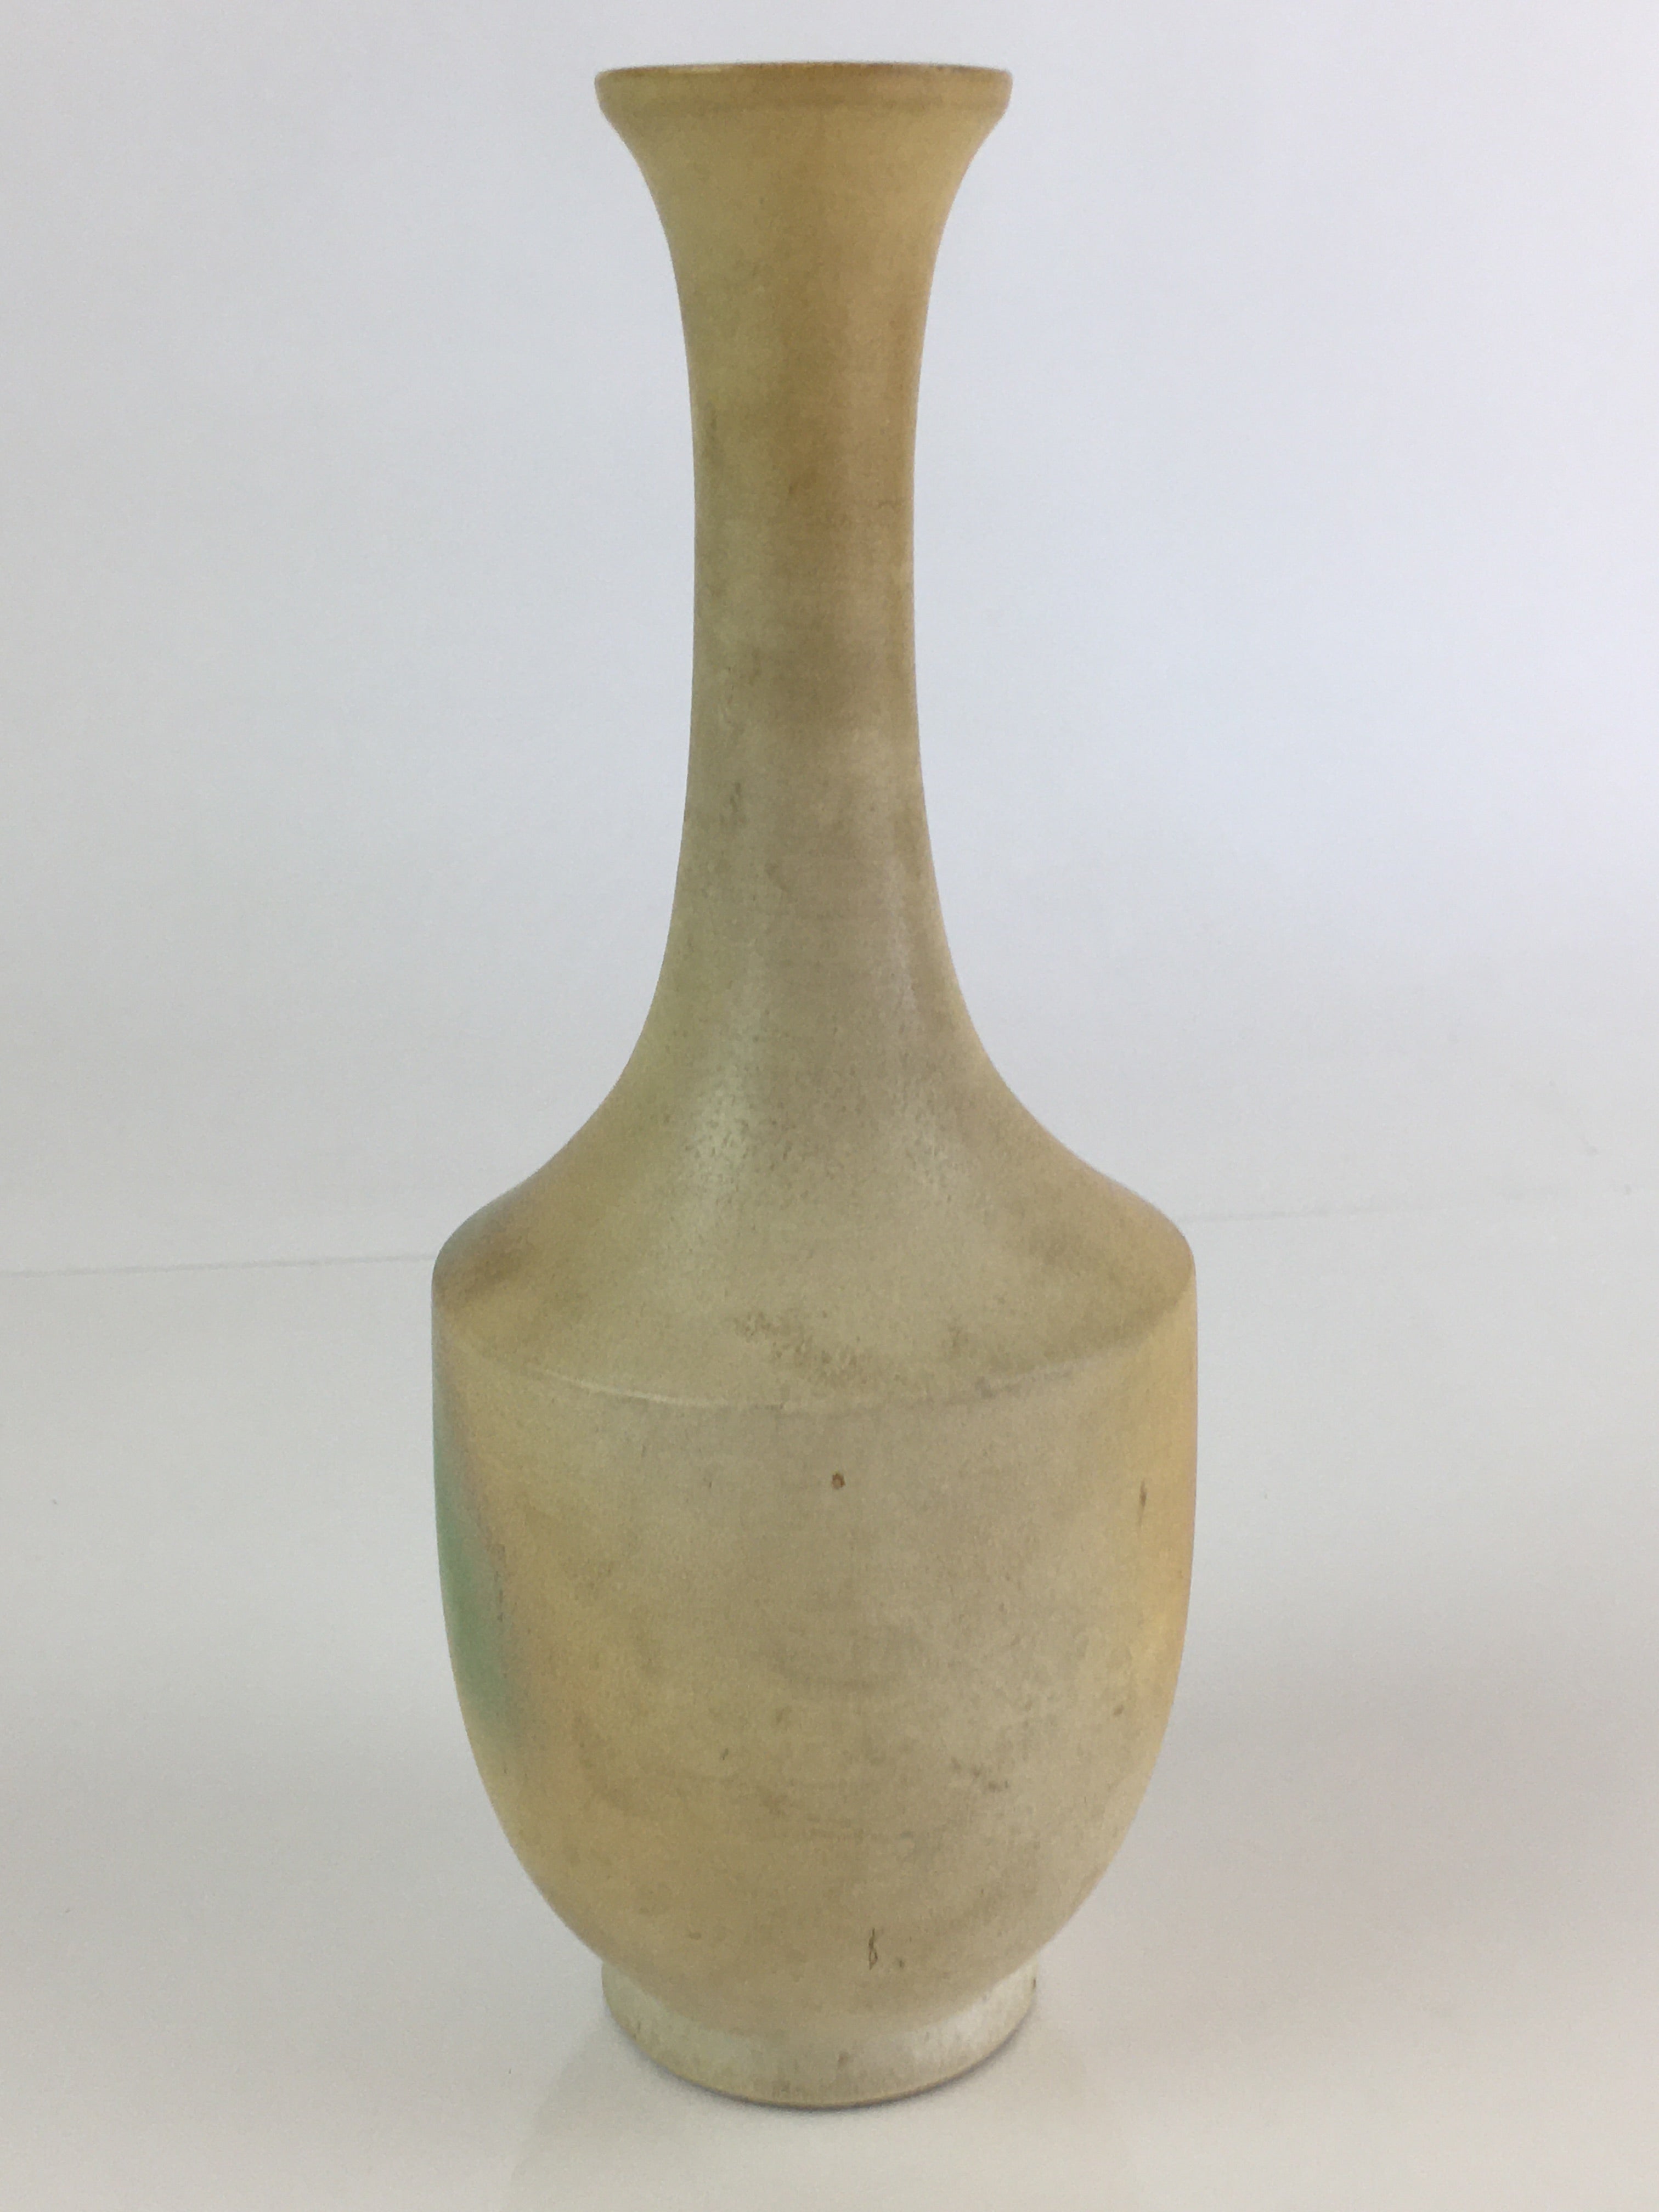 Japanese Ceramic Flower Vase Kabin Vtg White Green Pottery Ikebana FK2